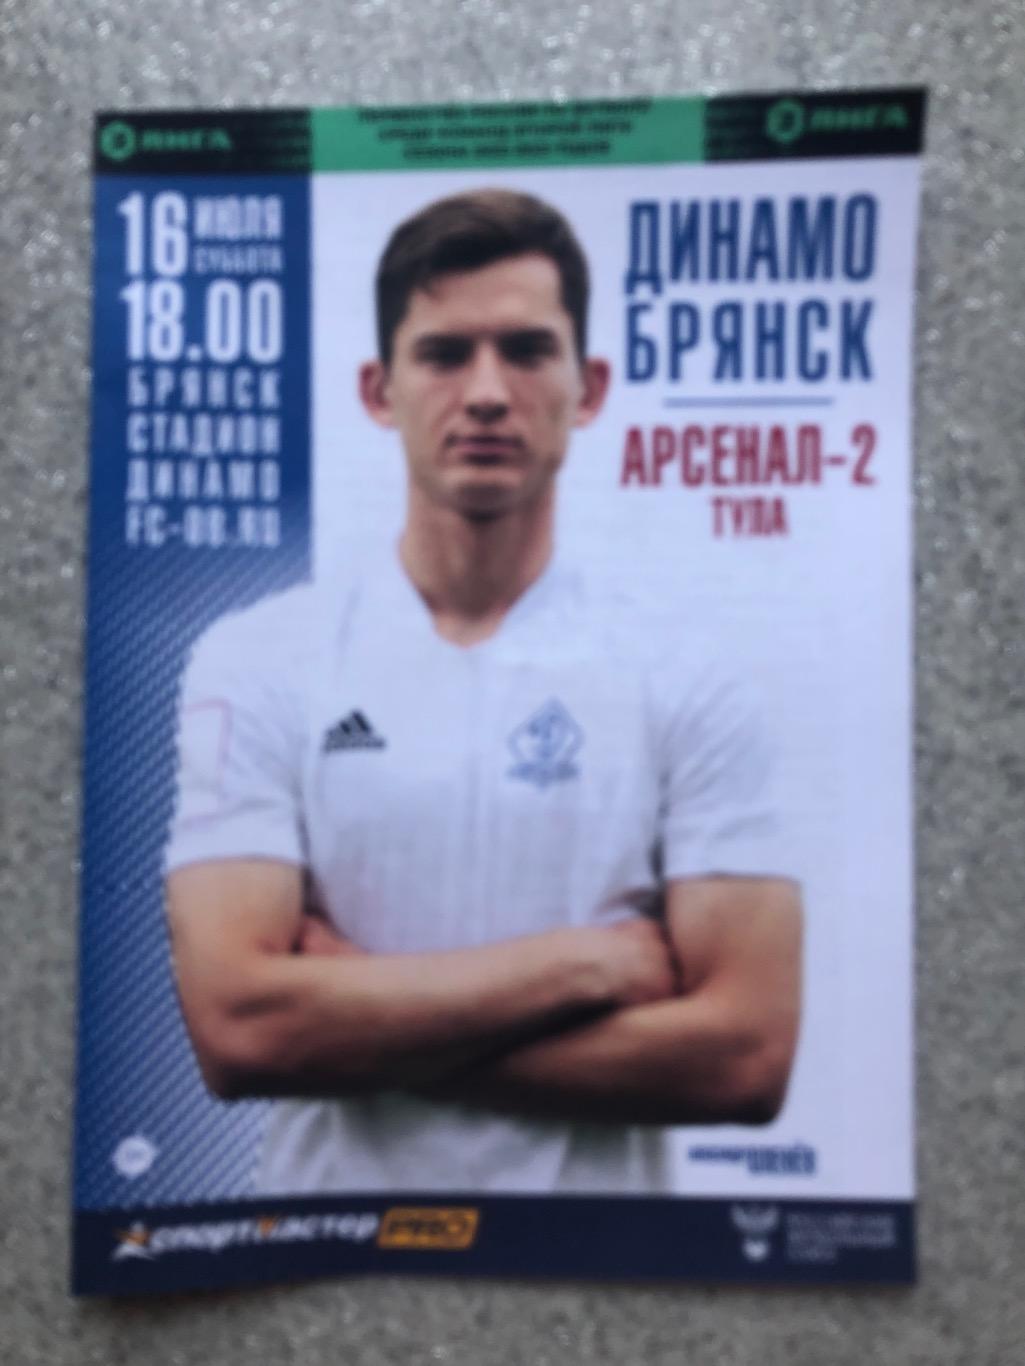 Динамо Брянск - Арсенал - 2 Тула